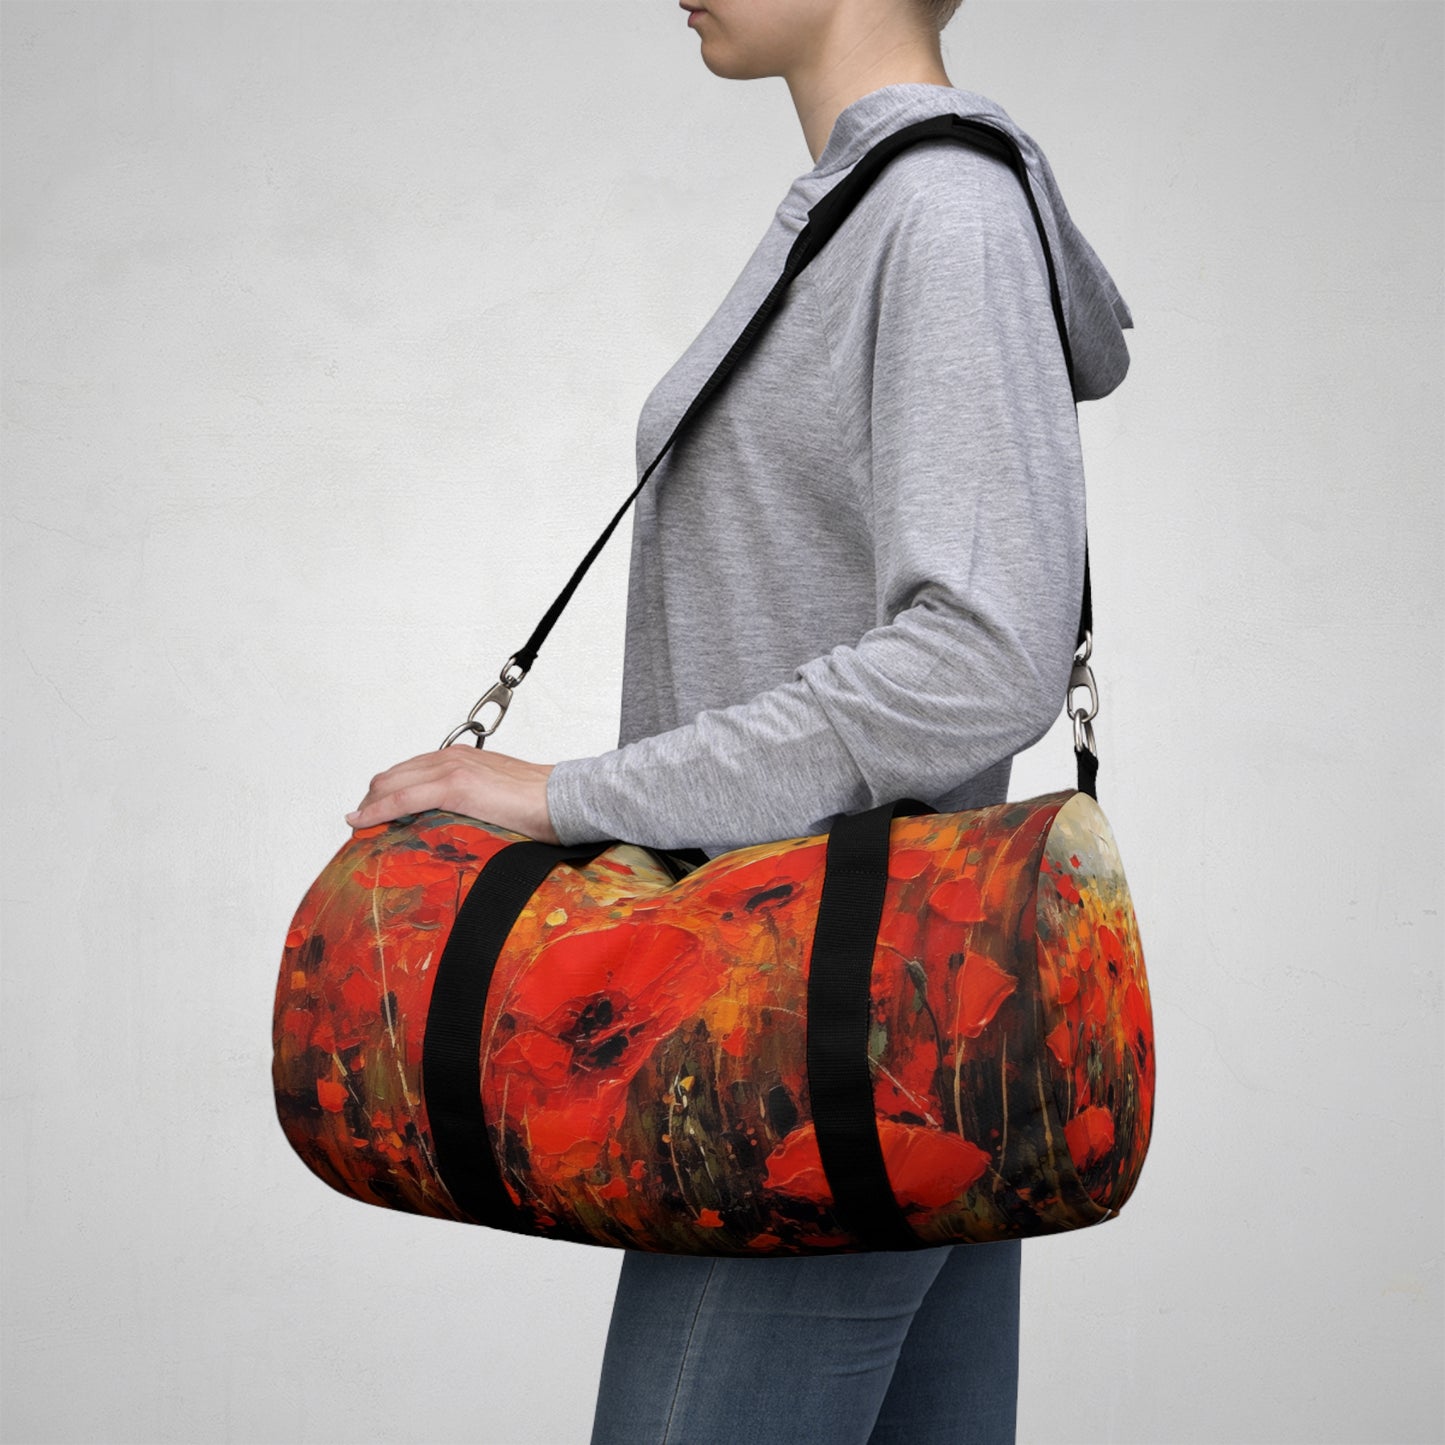 Whimsical Poppy Art on Duffel Bag